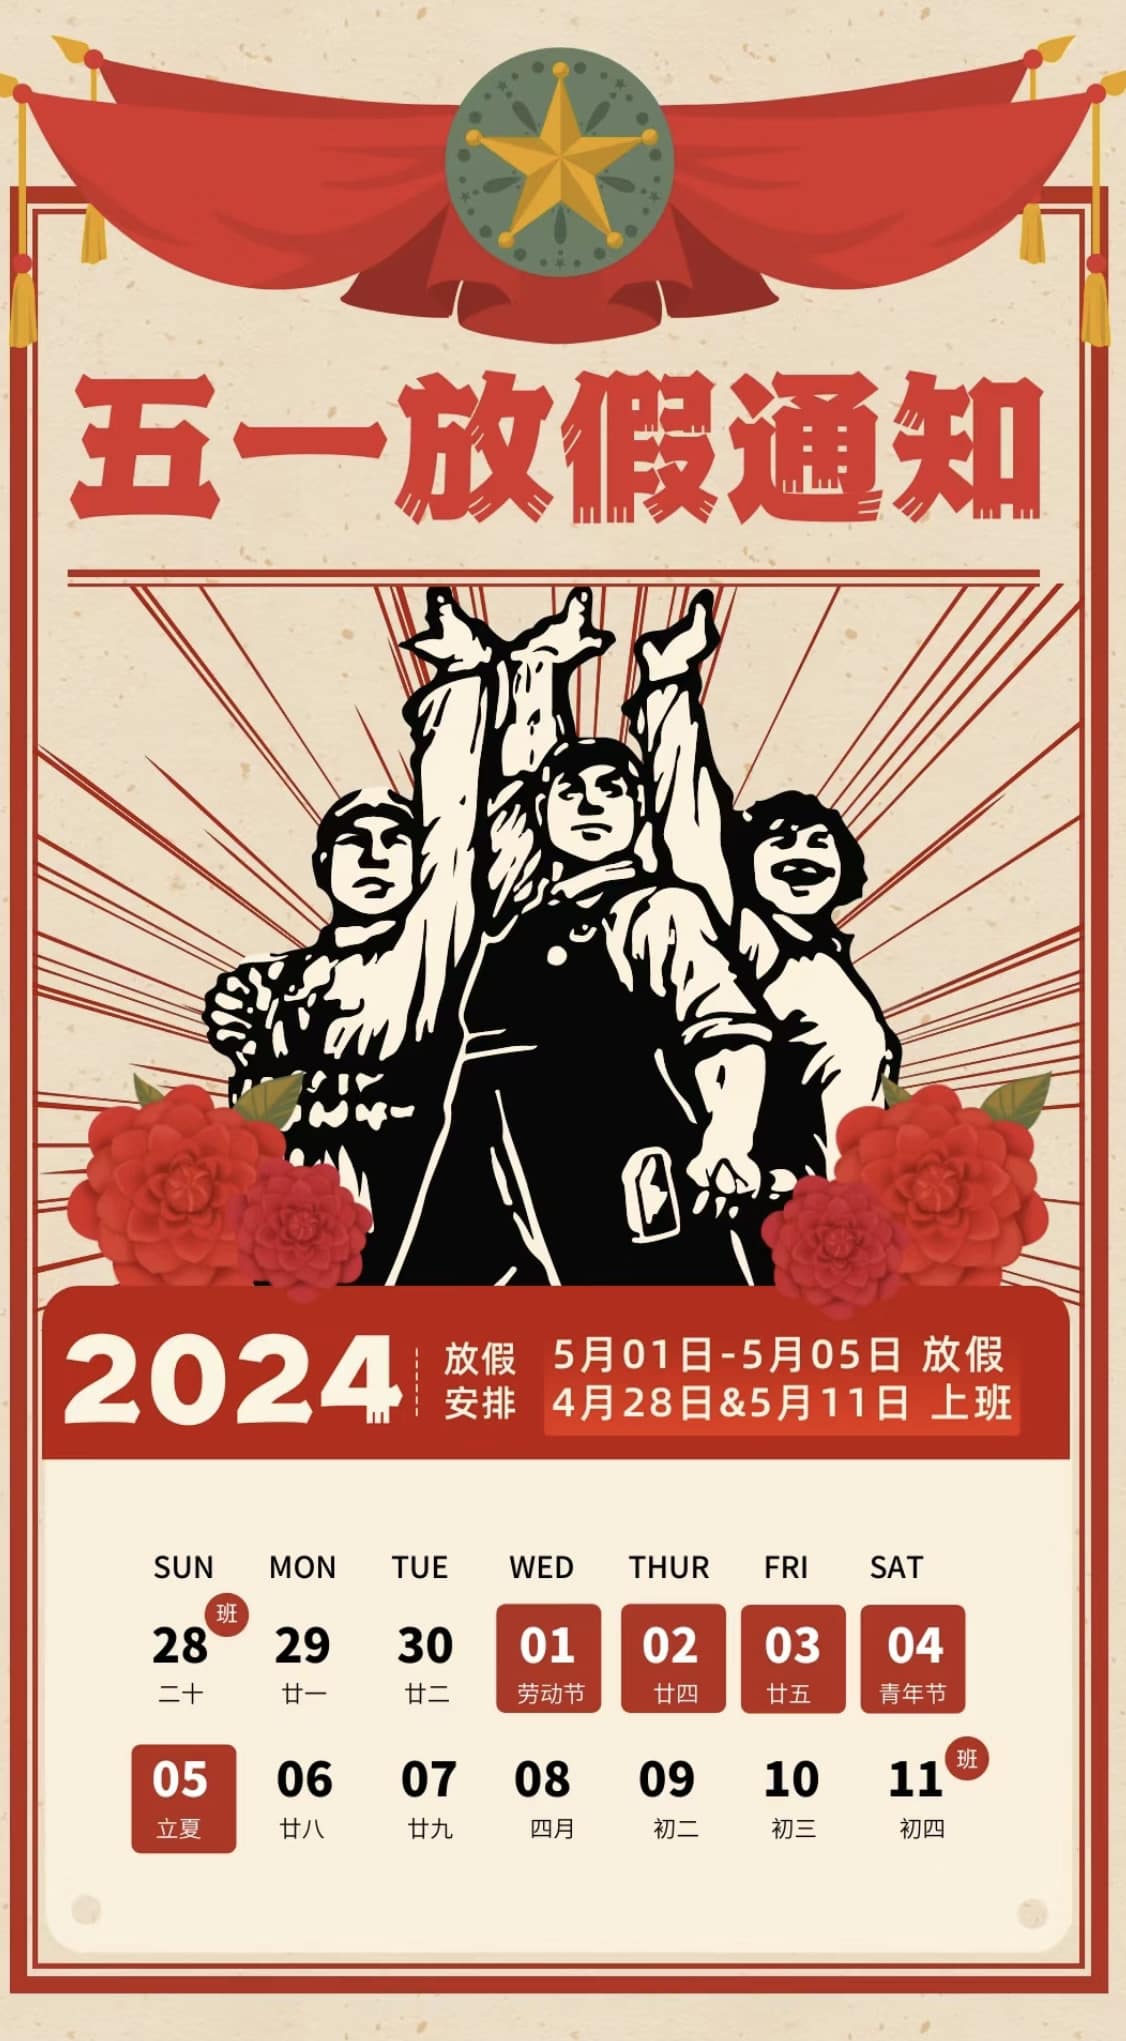 Обратите внимание, что мы приближаемся к Международному дню труда 2024 года!